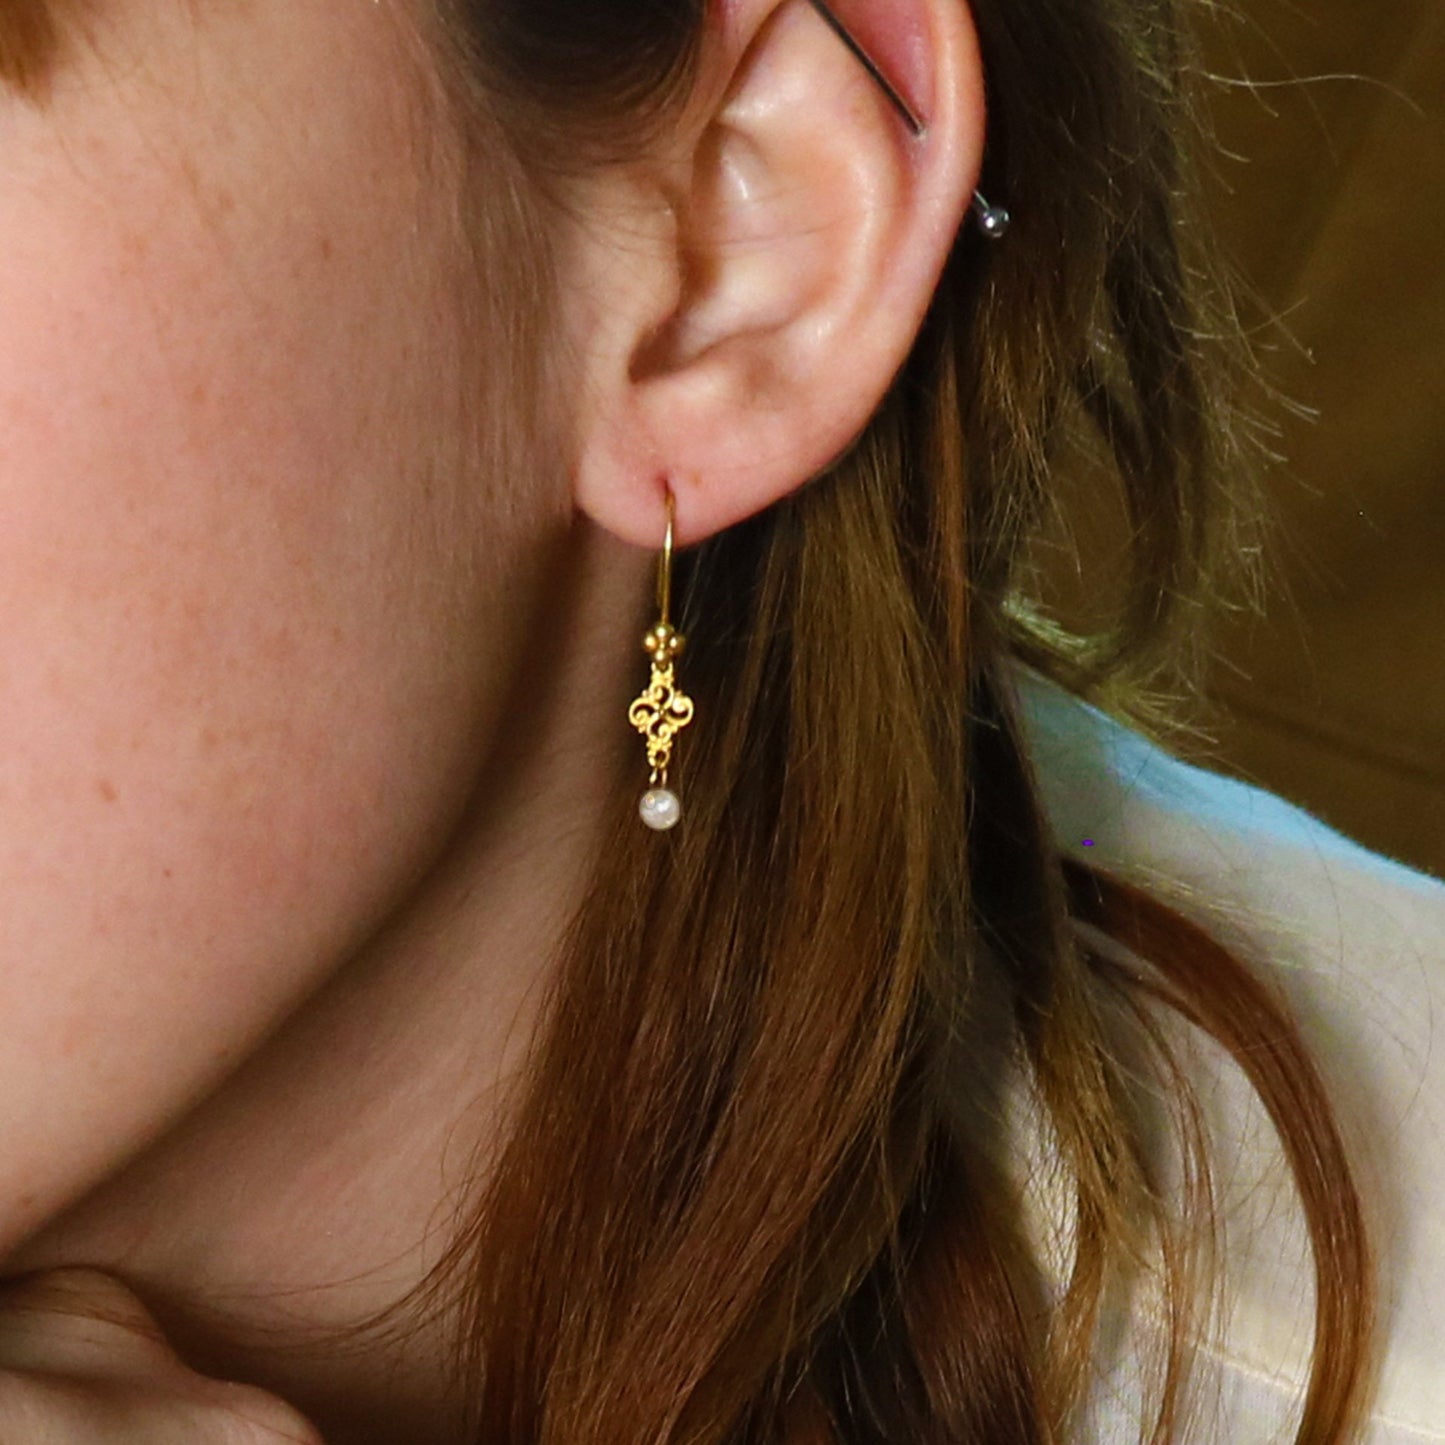 Gold White Diamond Earrings Faceted 18K Round Shape